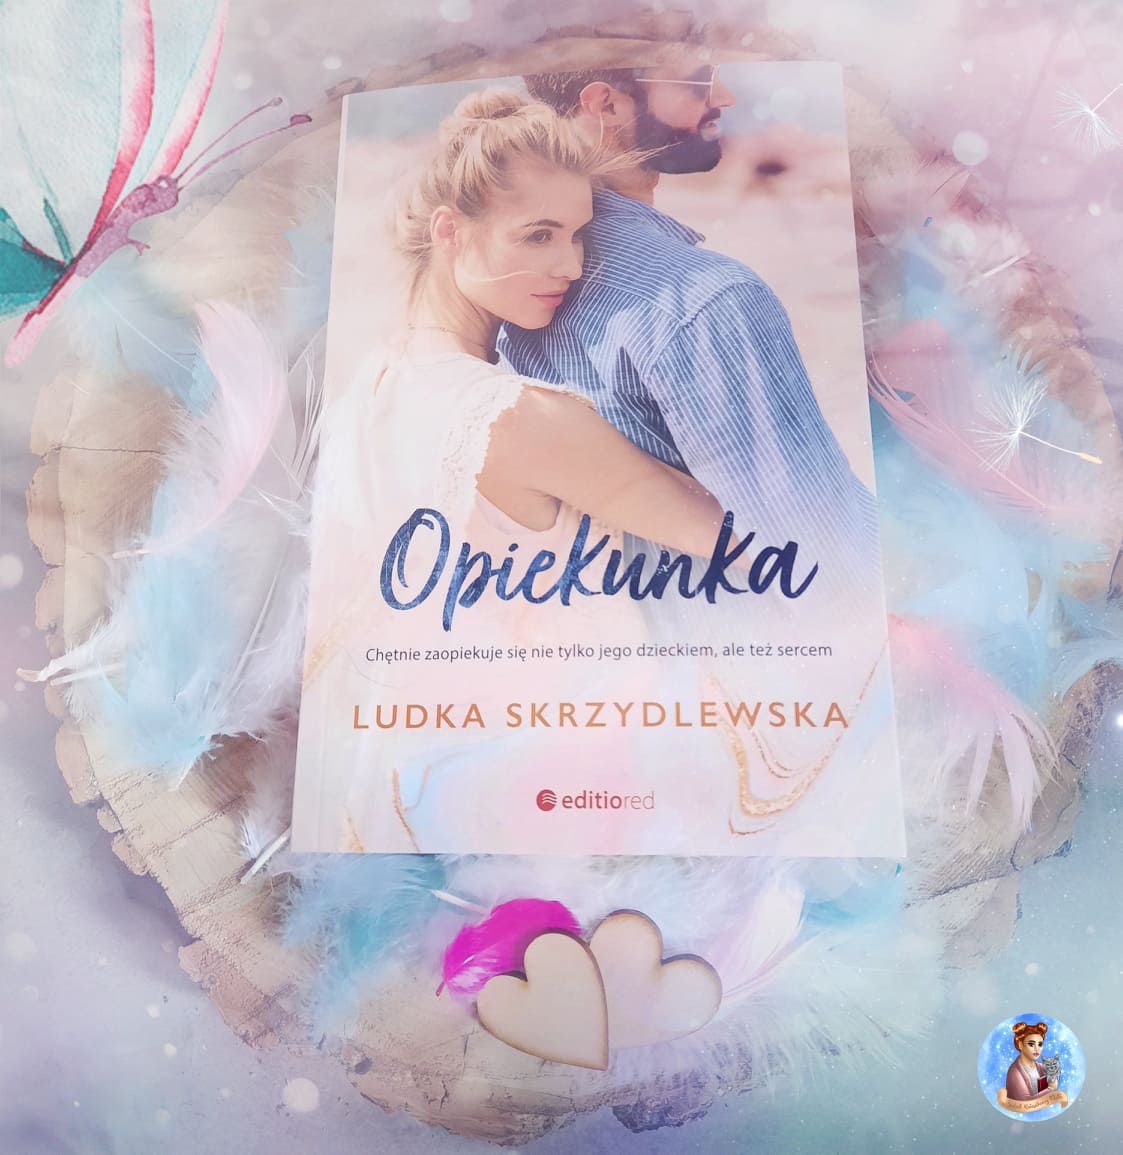 Ludka Skrzydlewska - Opiekunka - Wydawnictwo Editio Red - Recenzja 